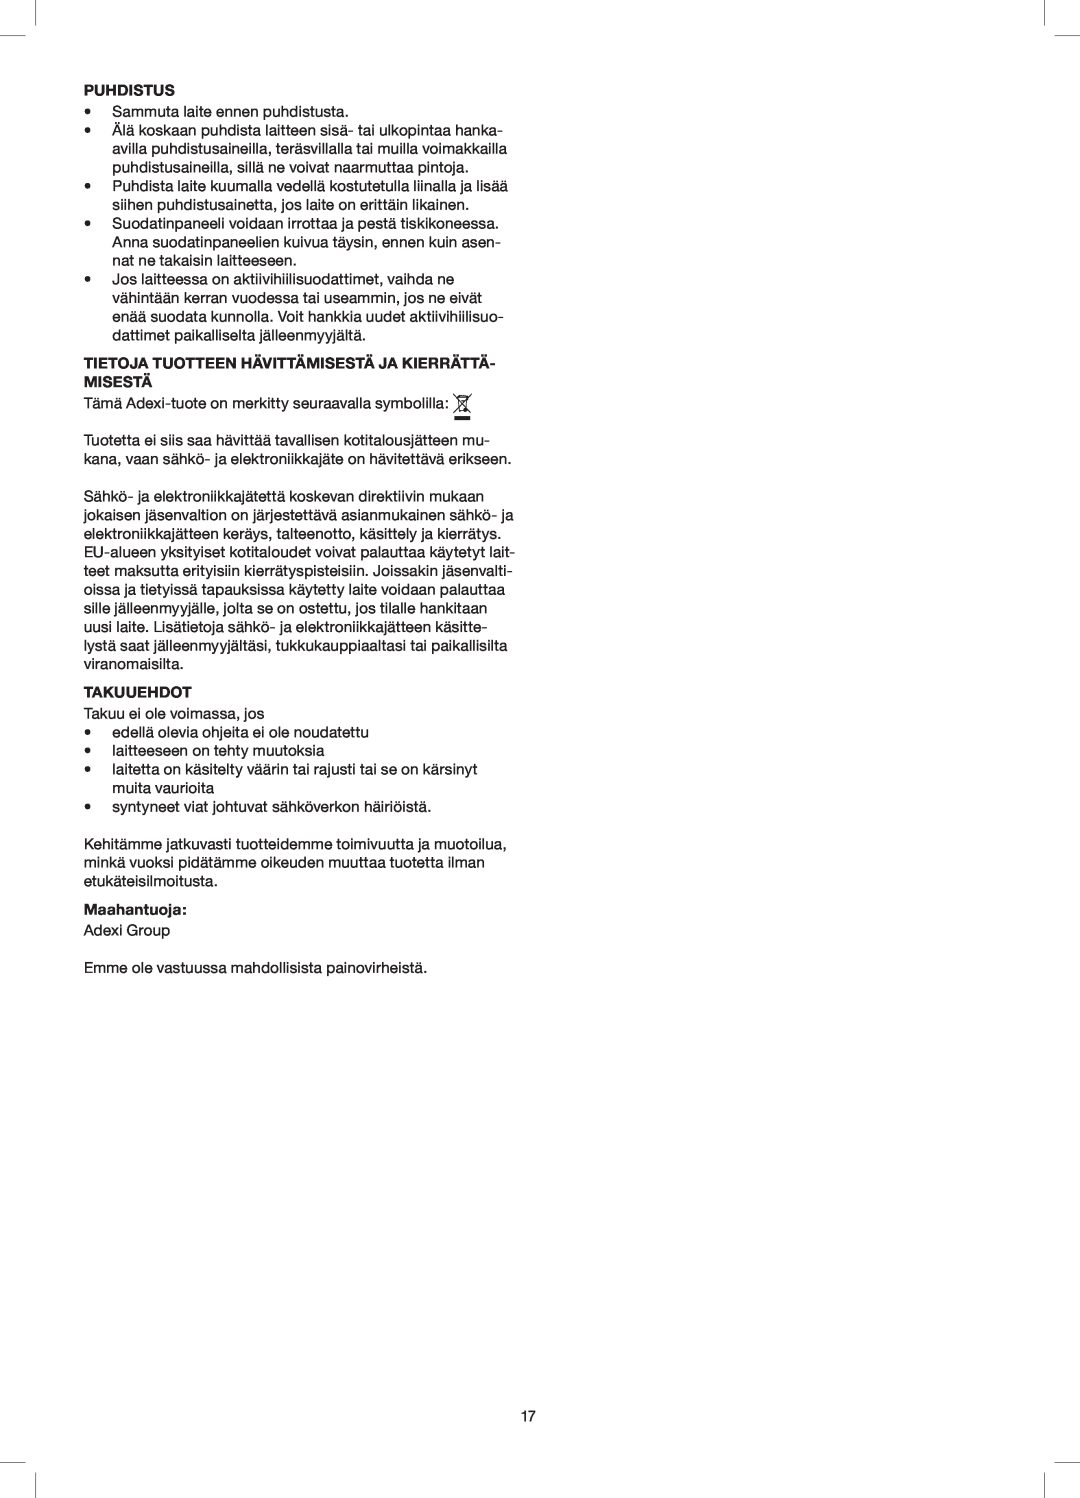 Melissa 258-014 manual Puhdistus, Tietoja Tuotteen Hävittämisestä Ja Kierrättä- Misestä, Takuuehdot, Maahantuoja 